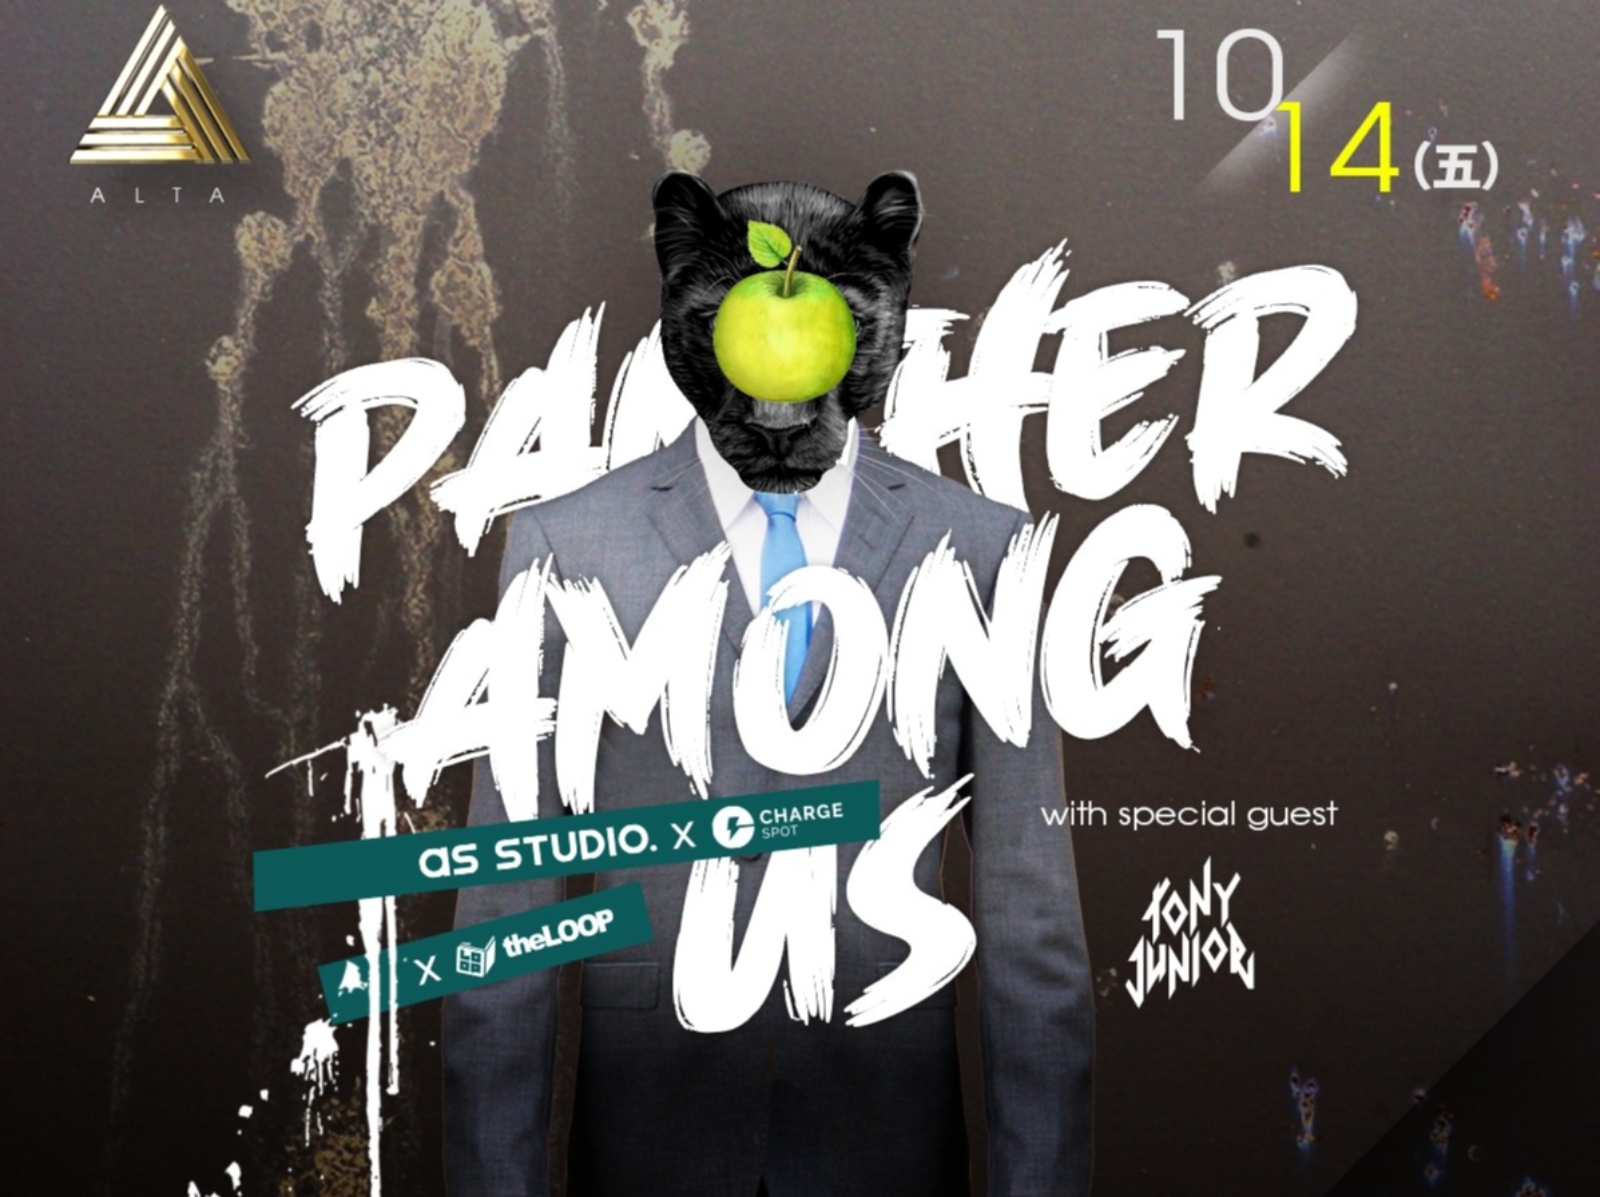 蔣友柏攜手 theLOOP 集團舉辦「Panther Among Us」跨界藝術派對，知名電音製作人 Tony Junior 也將客串演出！